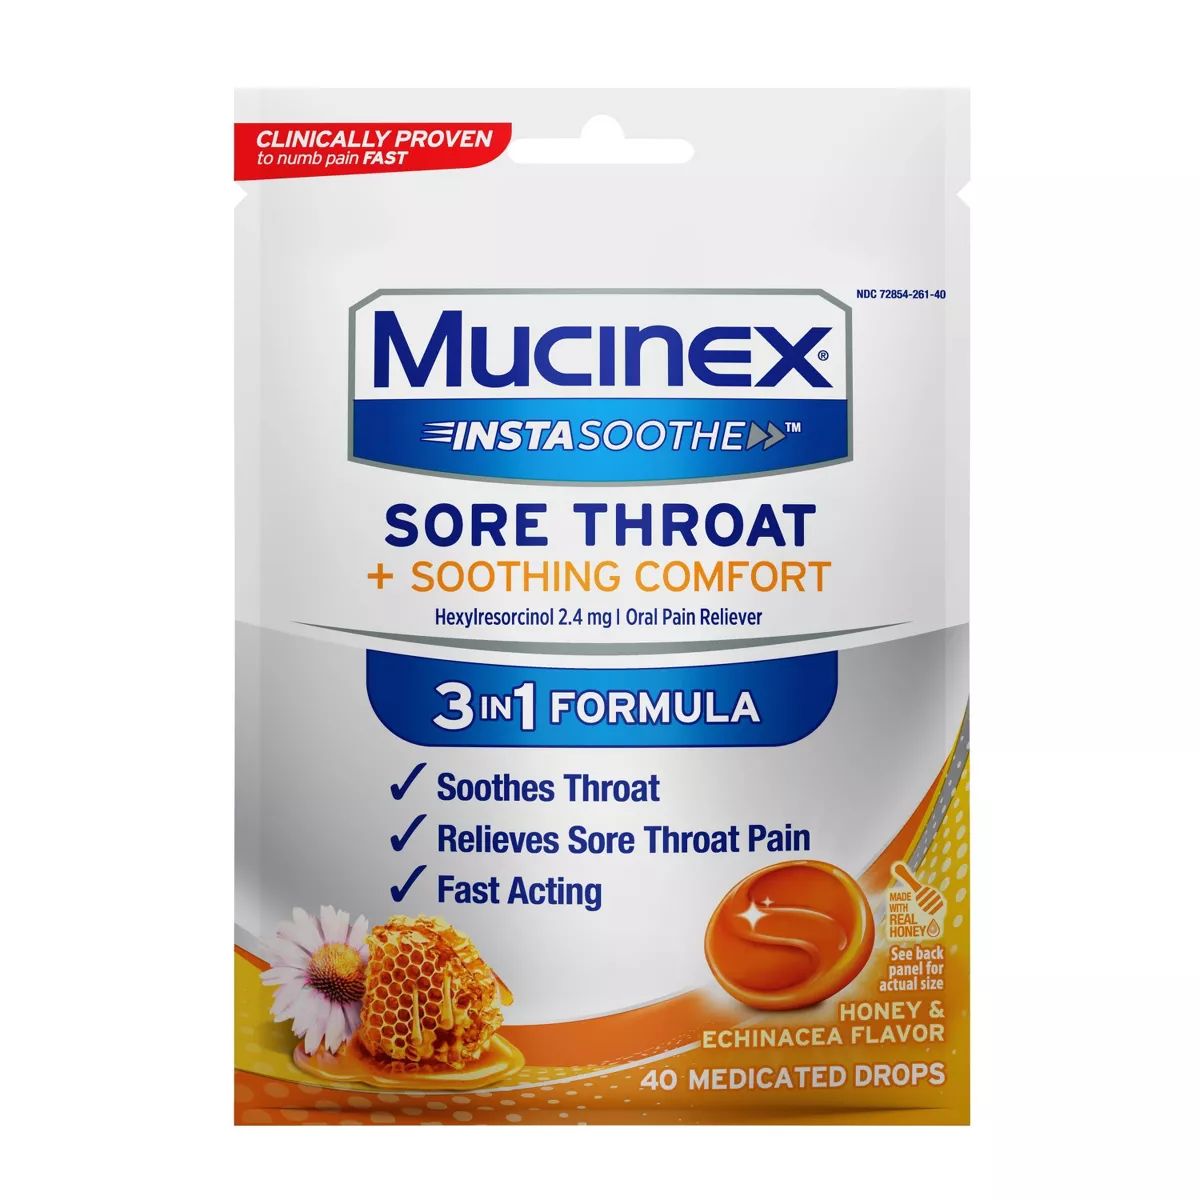 Mucinex Instasoothe Sore Throat Medicated Drops - Honey & Echinacea - 40ct | Target